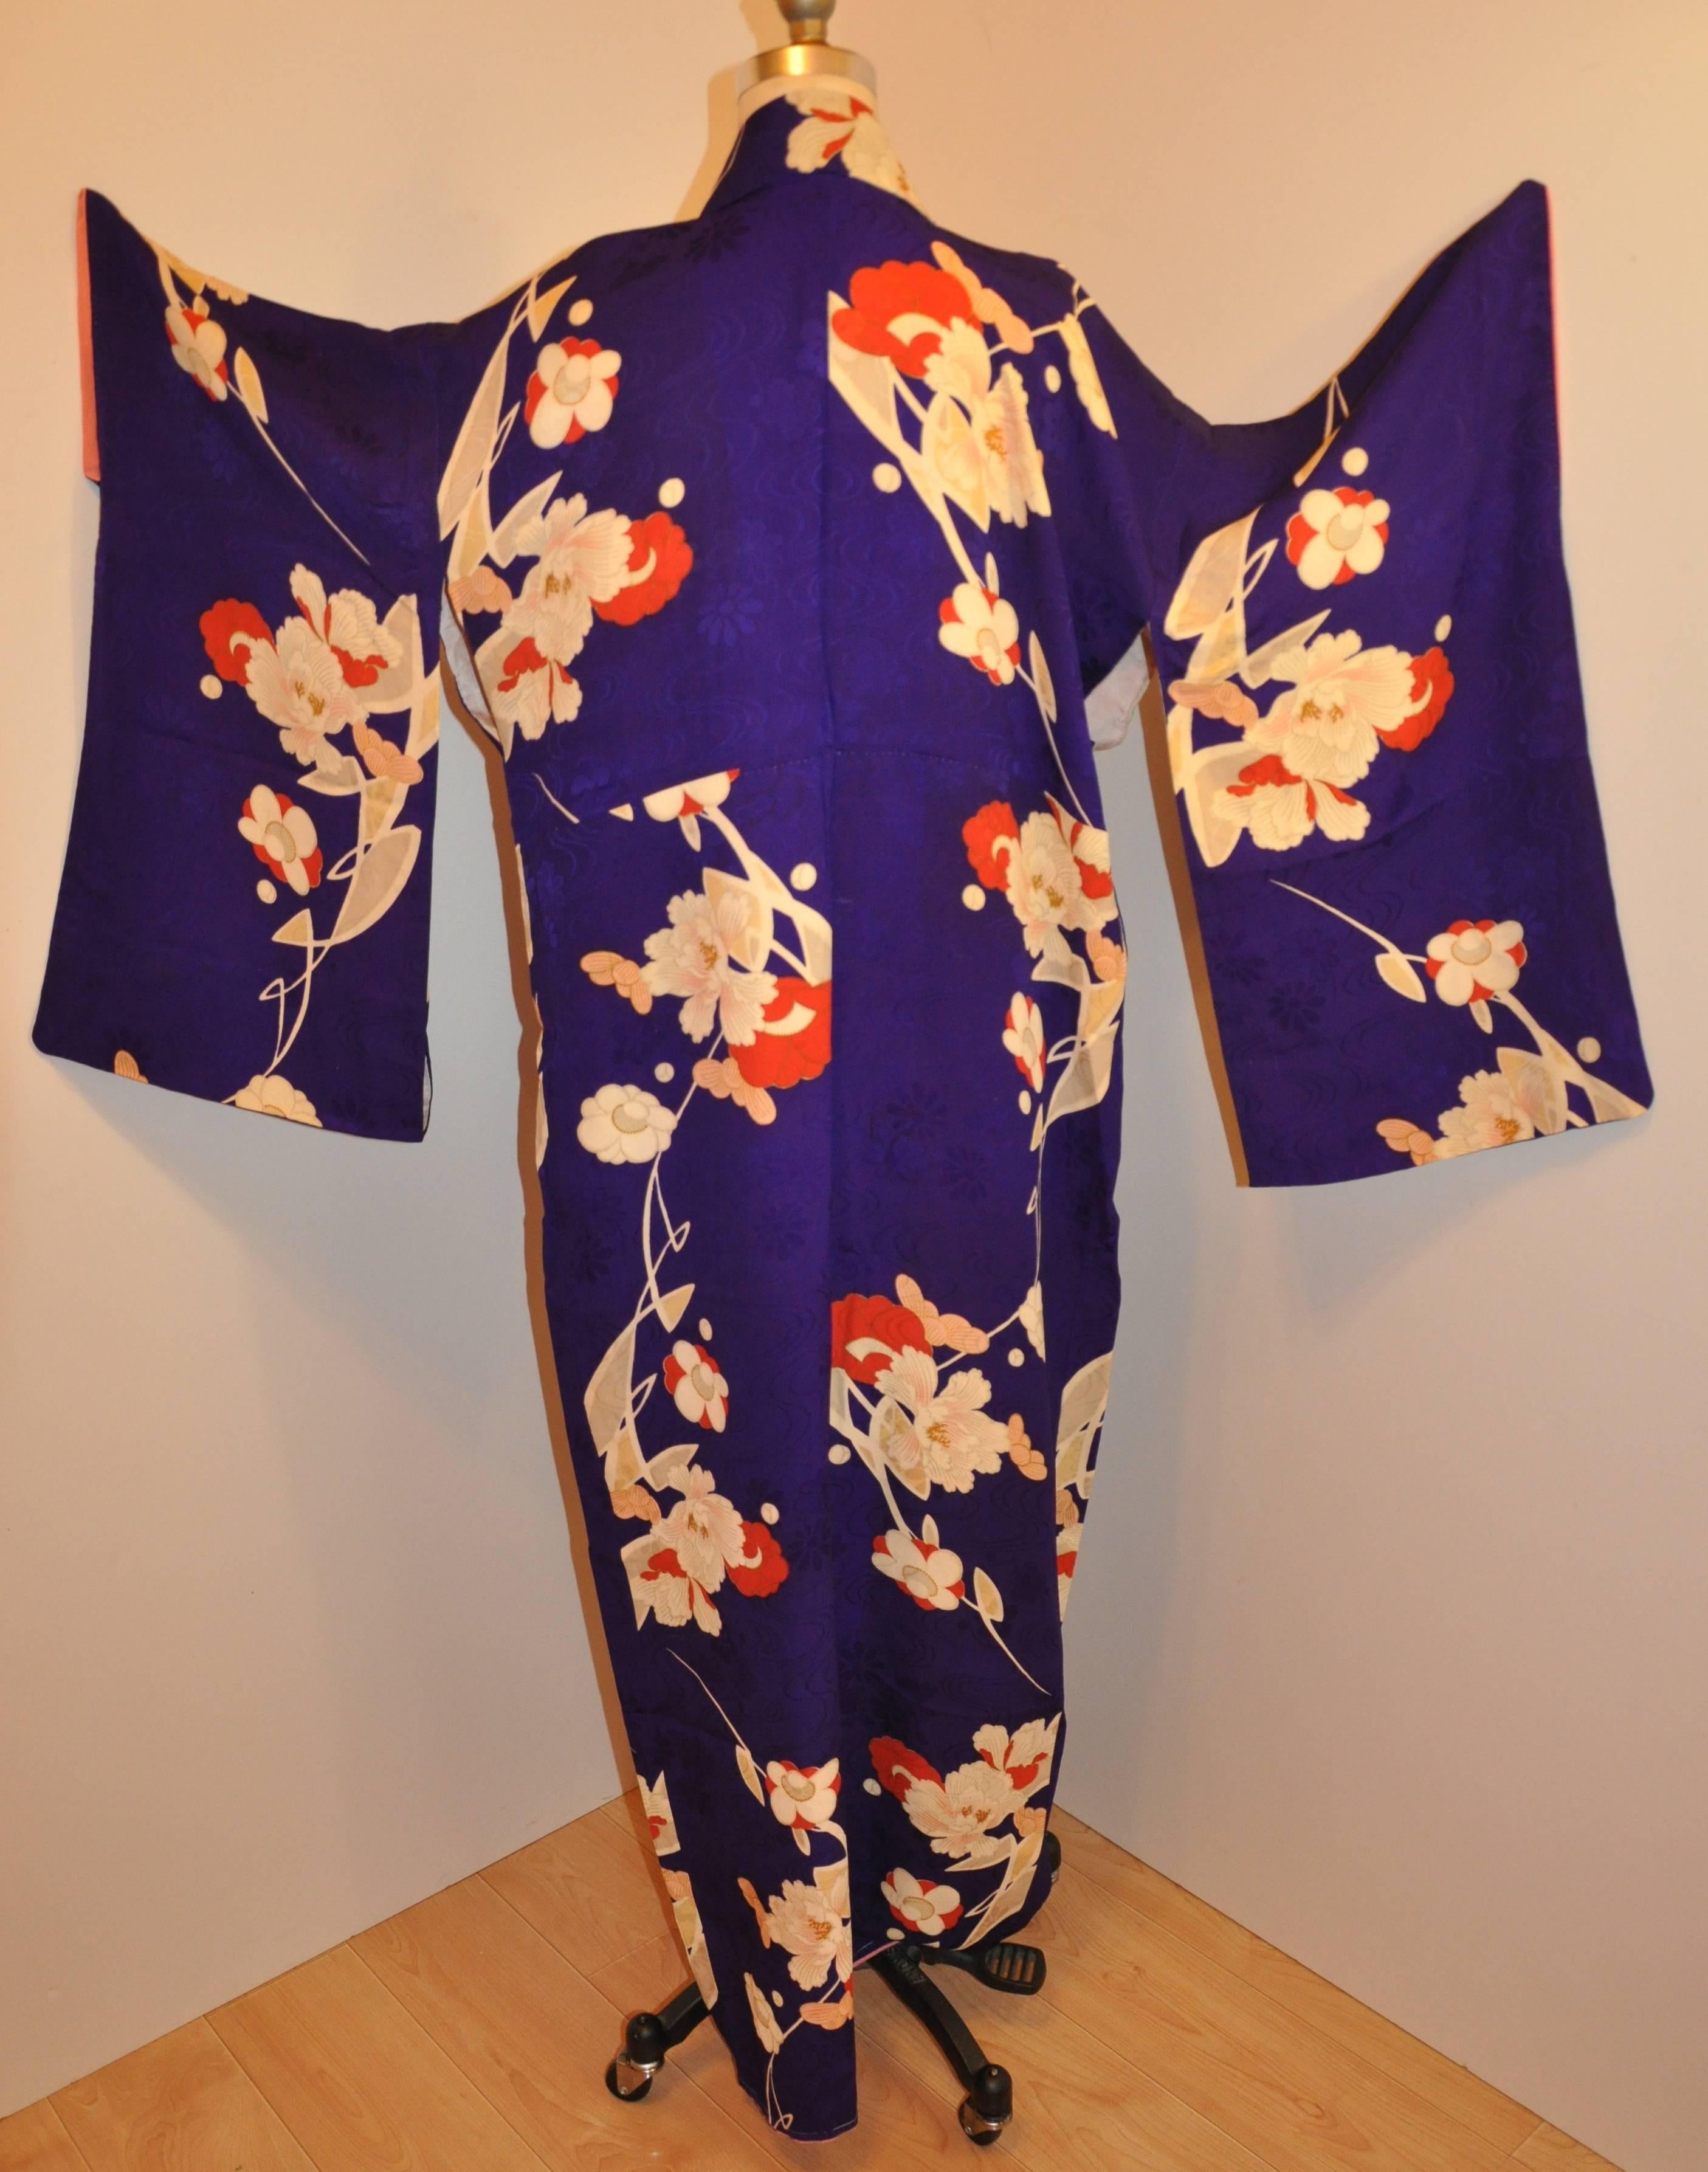      Ce kimono en soie violette merveilleusement détaillé présente d'abord des fleurs violettes. La soie violette est accentuée par des fleurs multicolores dans son kimono japonais cousu à la main. La longueur mesure 58